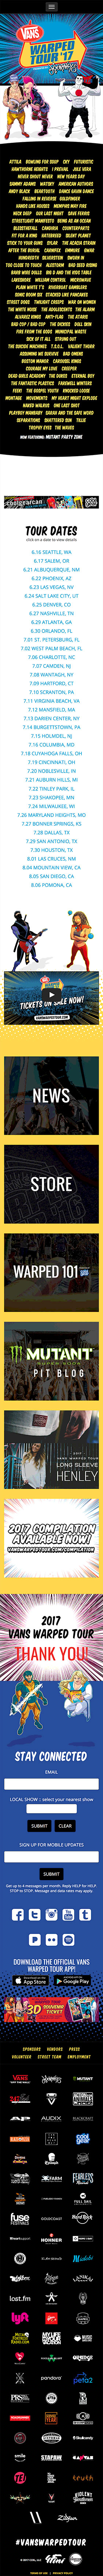 Vans Warped Tour Website - Mobile